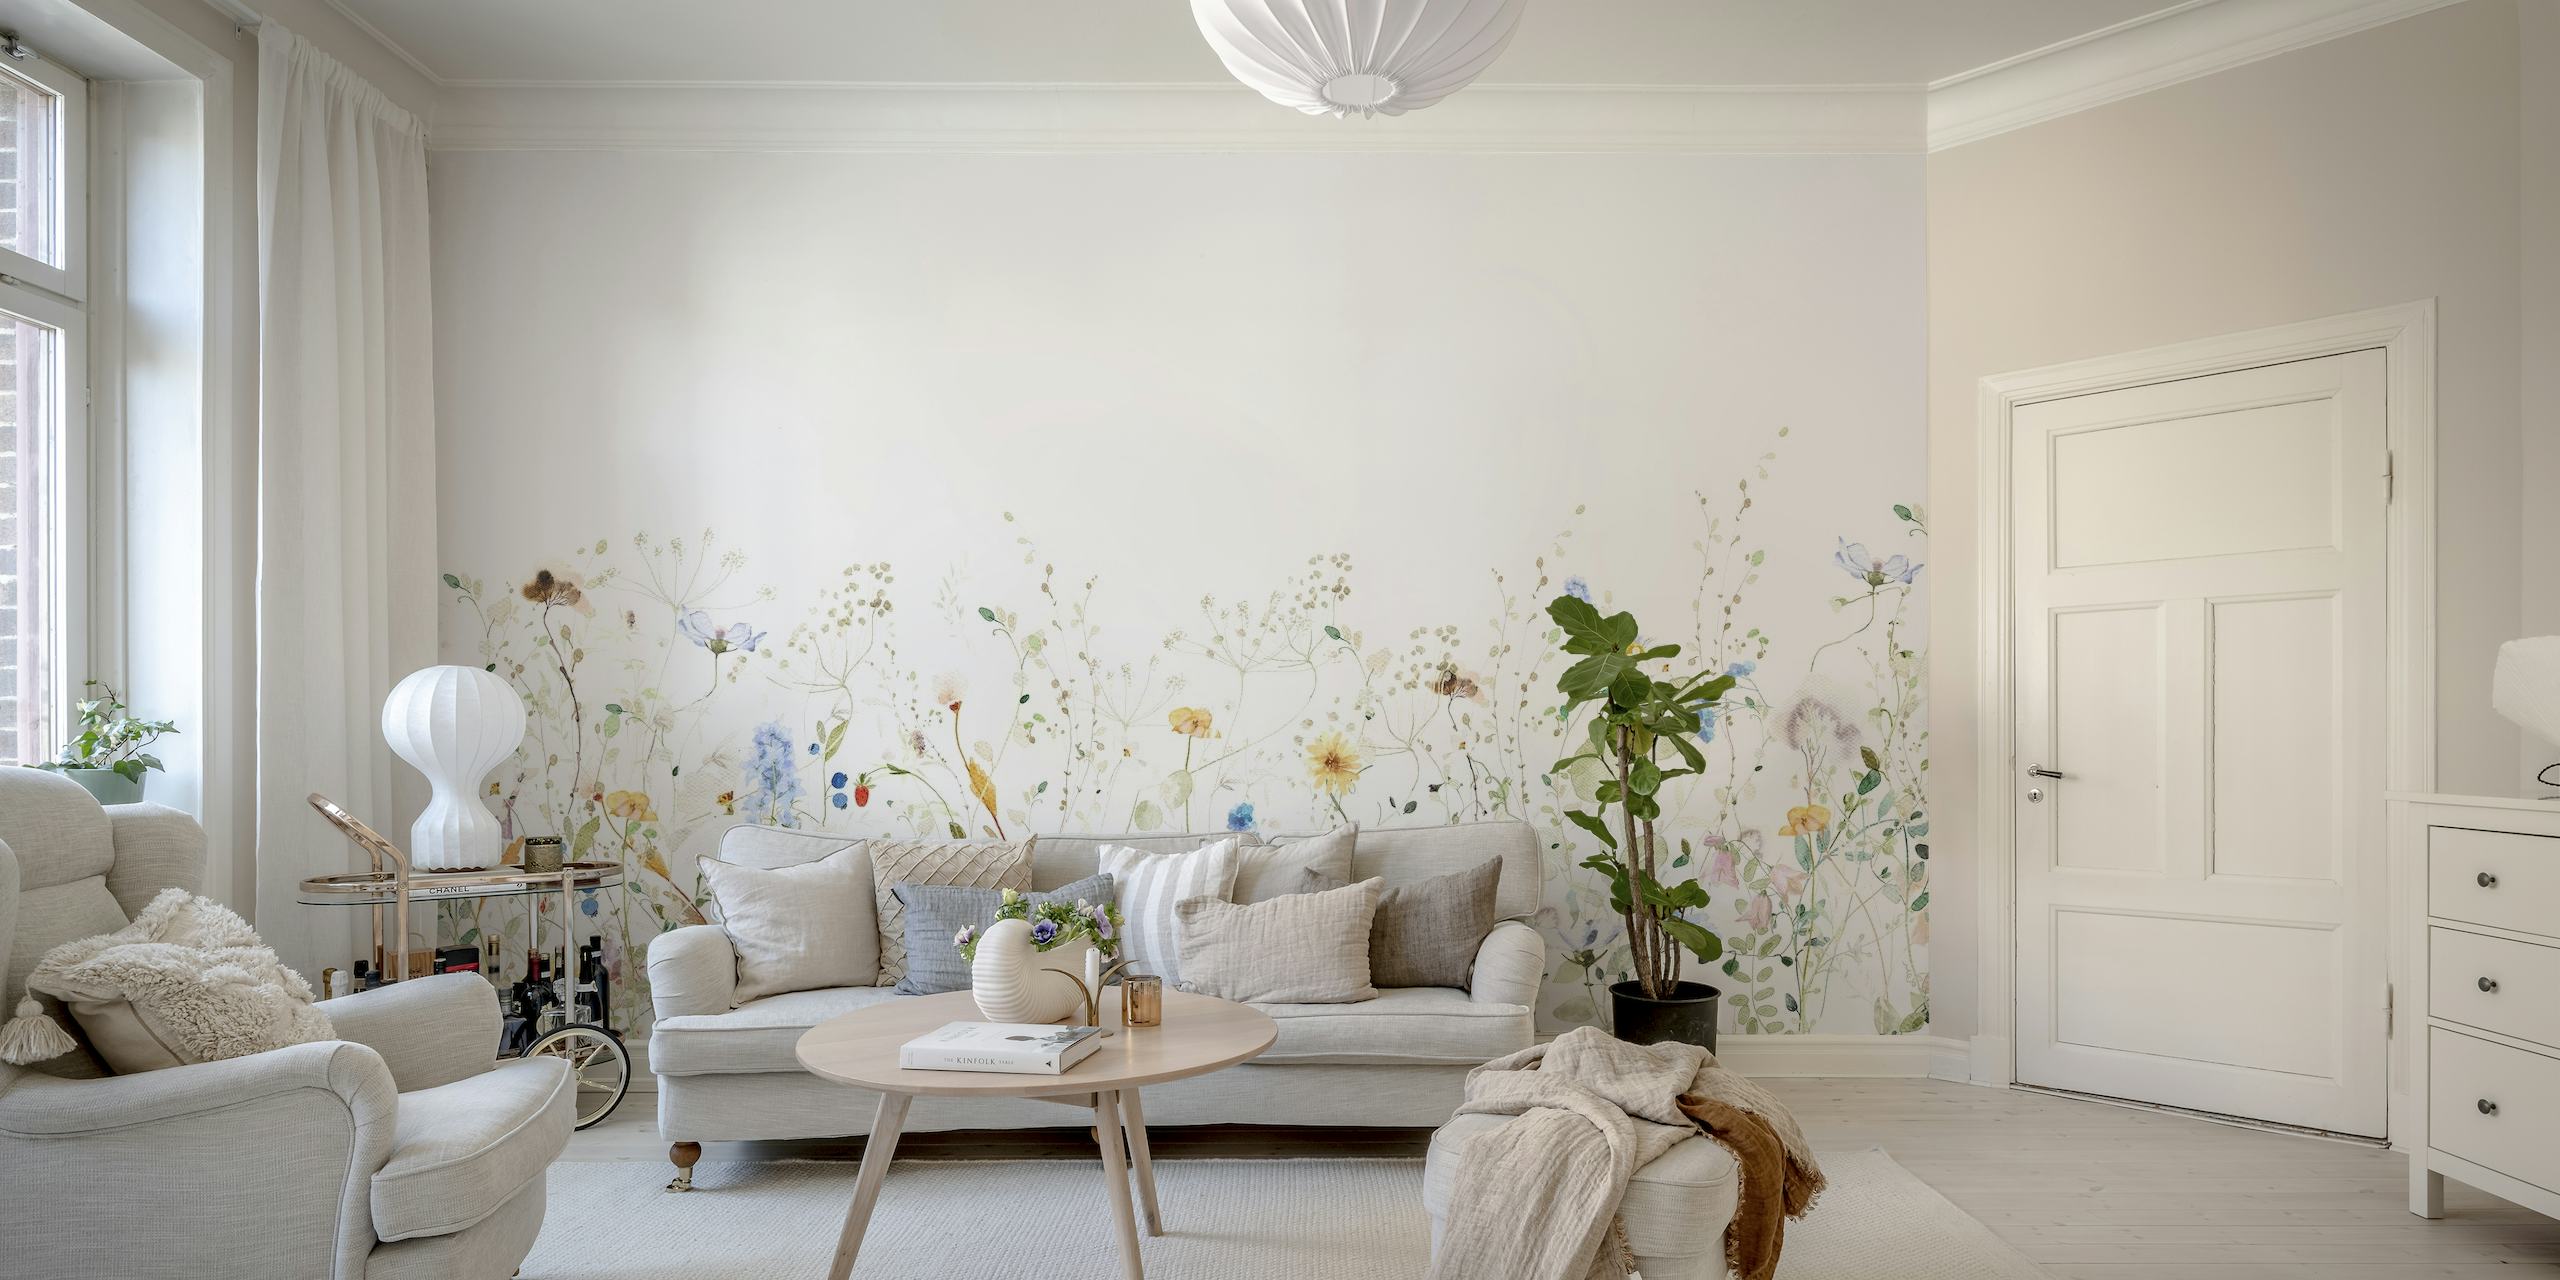 Farverige vilde blomster fint spredt over en lys baggrund og skaber et frodigt eng-lignende vægmaleri